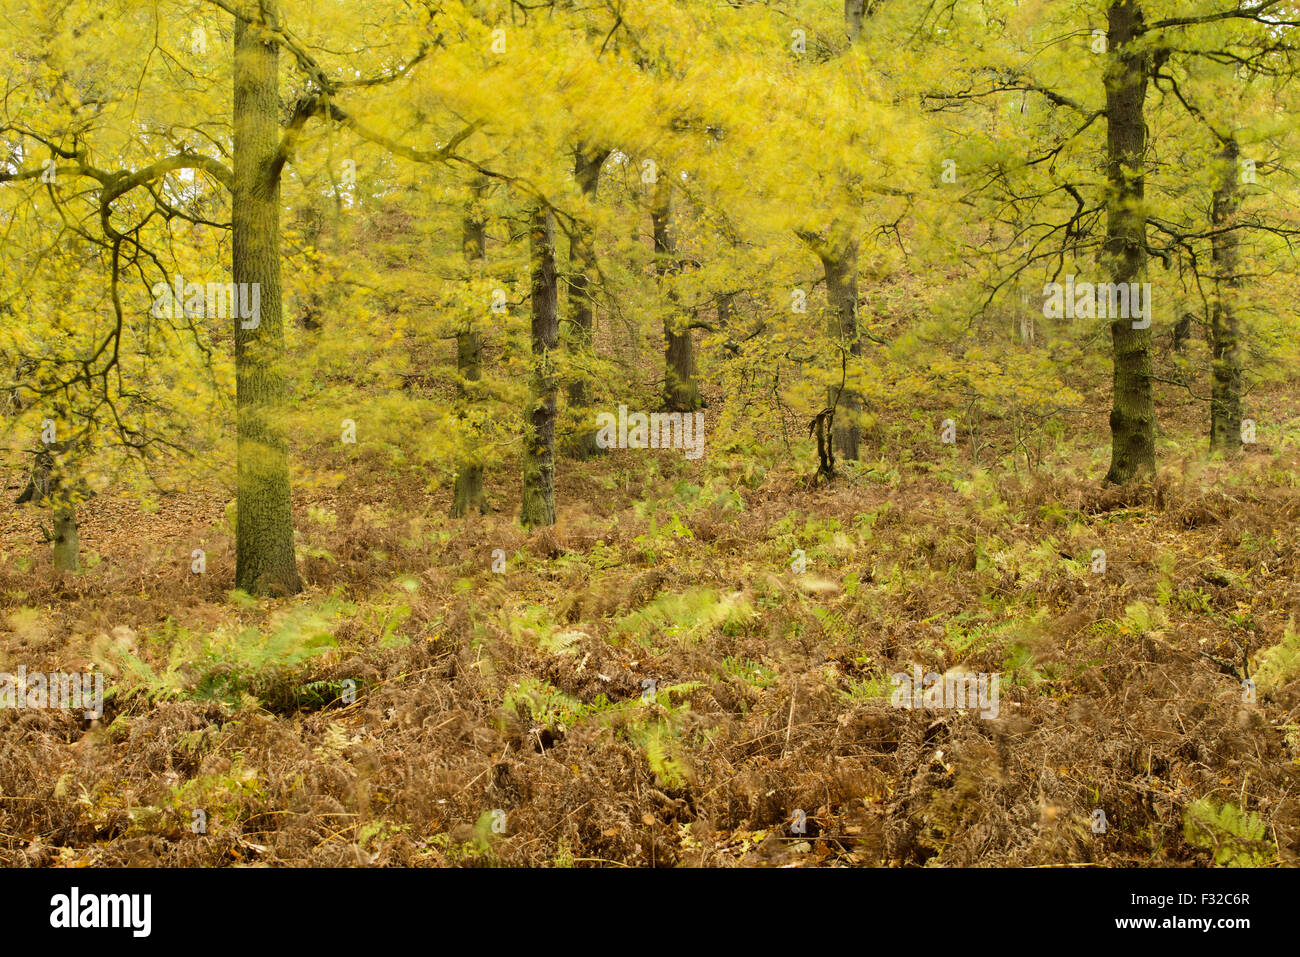 Sommergrünen Wald Lebensraum mit vom Wind verwehten Blätter in Herbstfärbung, verschwommen Bewegung, Shrugborough, Staffordshire, England, November Stockfoto